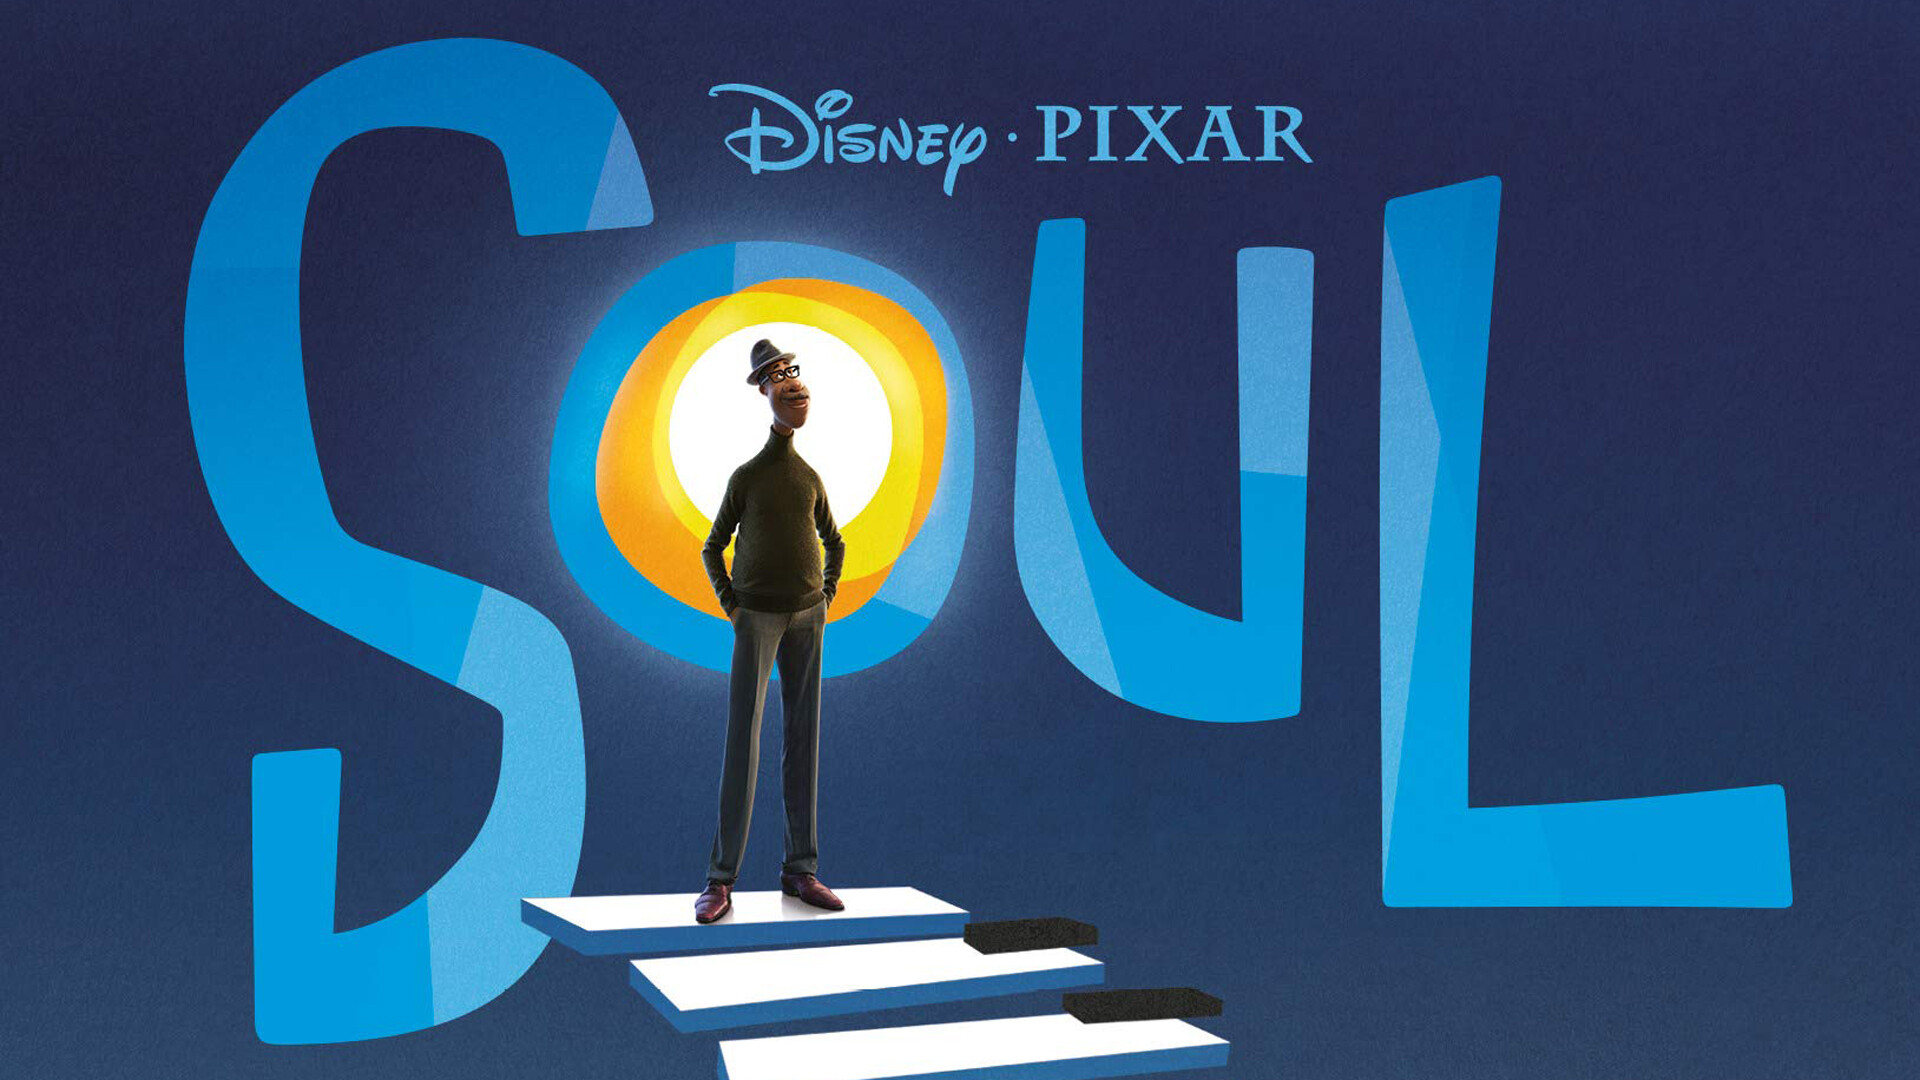 Soul (Pixar): Pixar's first film to be released on Disney+, Joe Gardner. 1920x1080 Full HD Background.